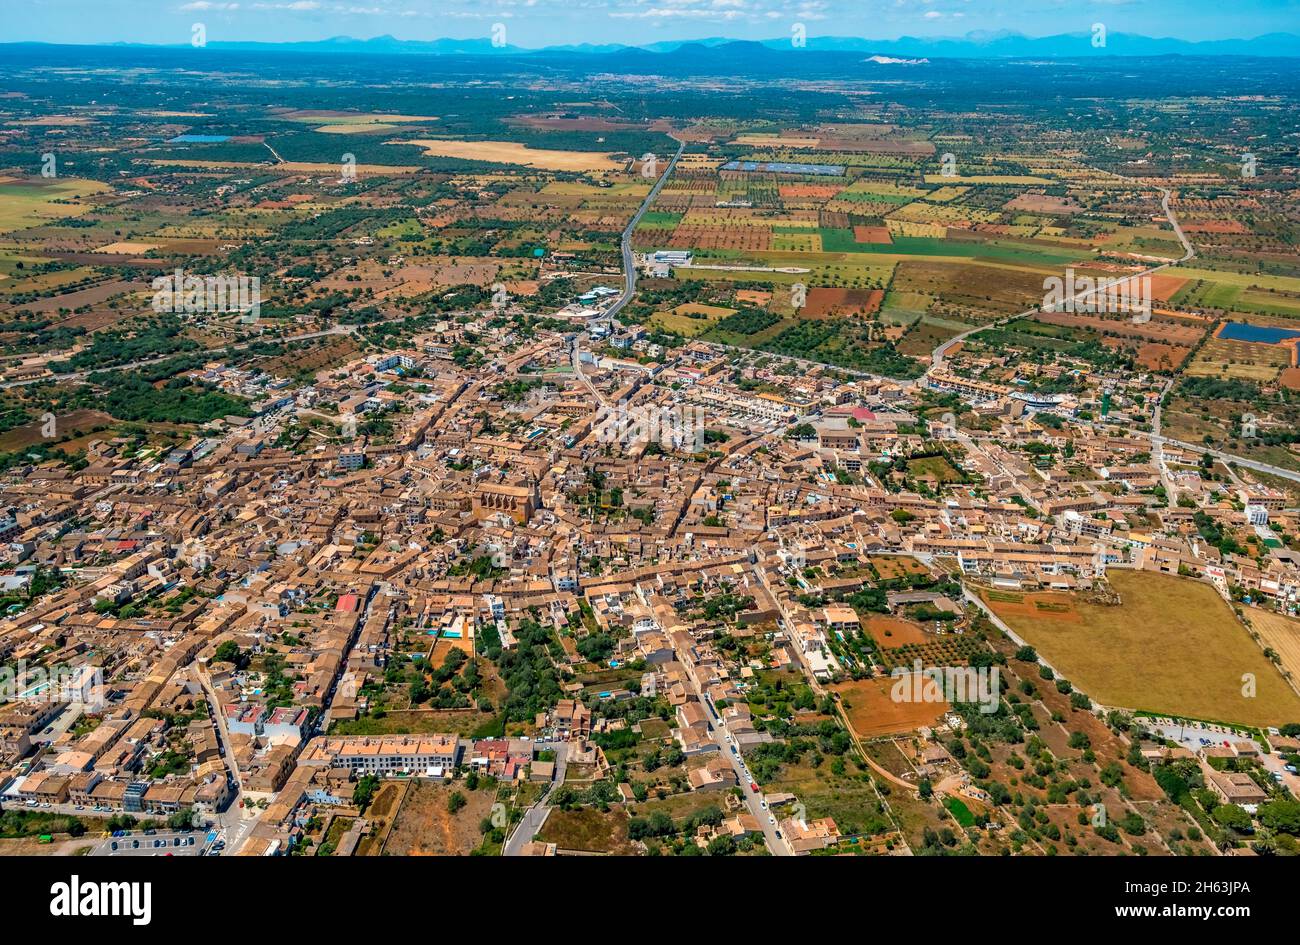 vista aérea,vista de la ciudad de santanyí con vista interior,santanyí,islas baleares,mallorca,españa Foto de stock